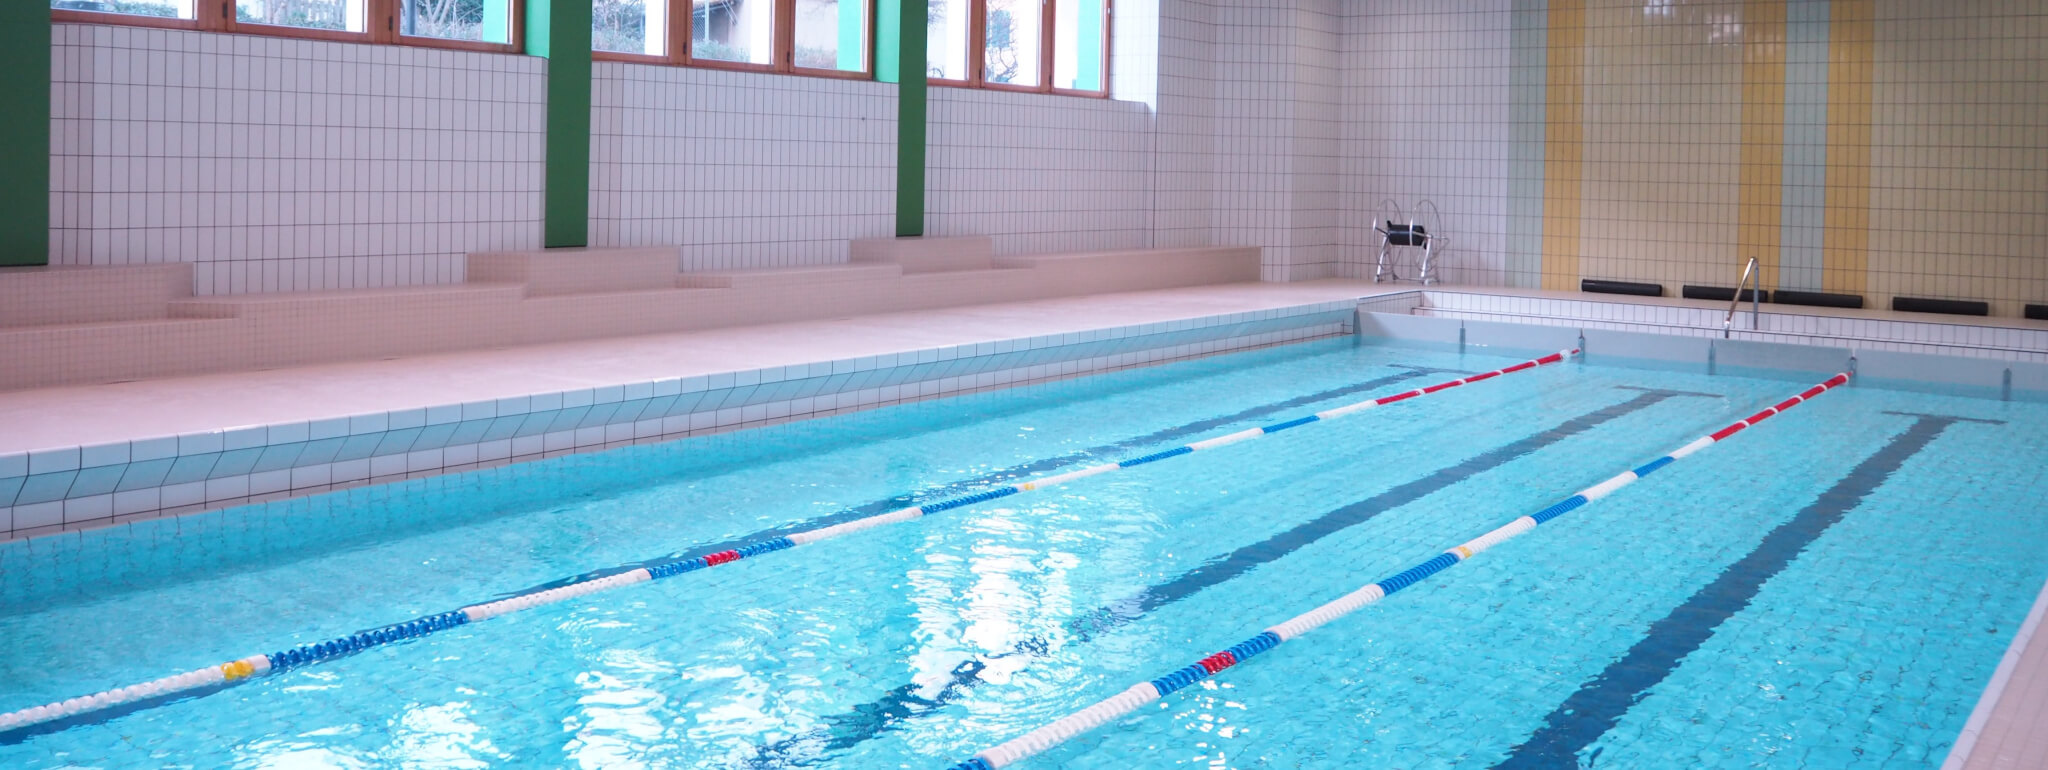 Aktuelle Trainingsmöglichkeiten nach den Herbstferien, Update Sanierung Schwimmhalle